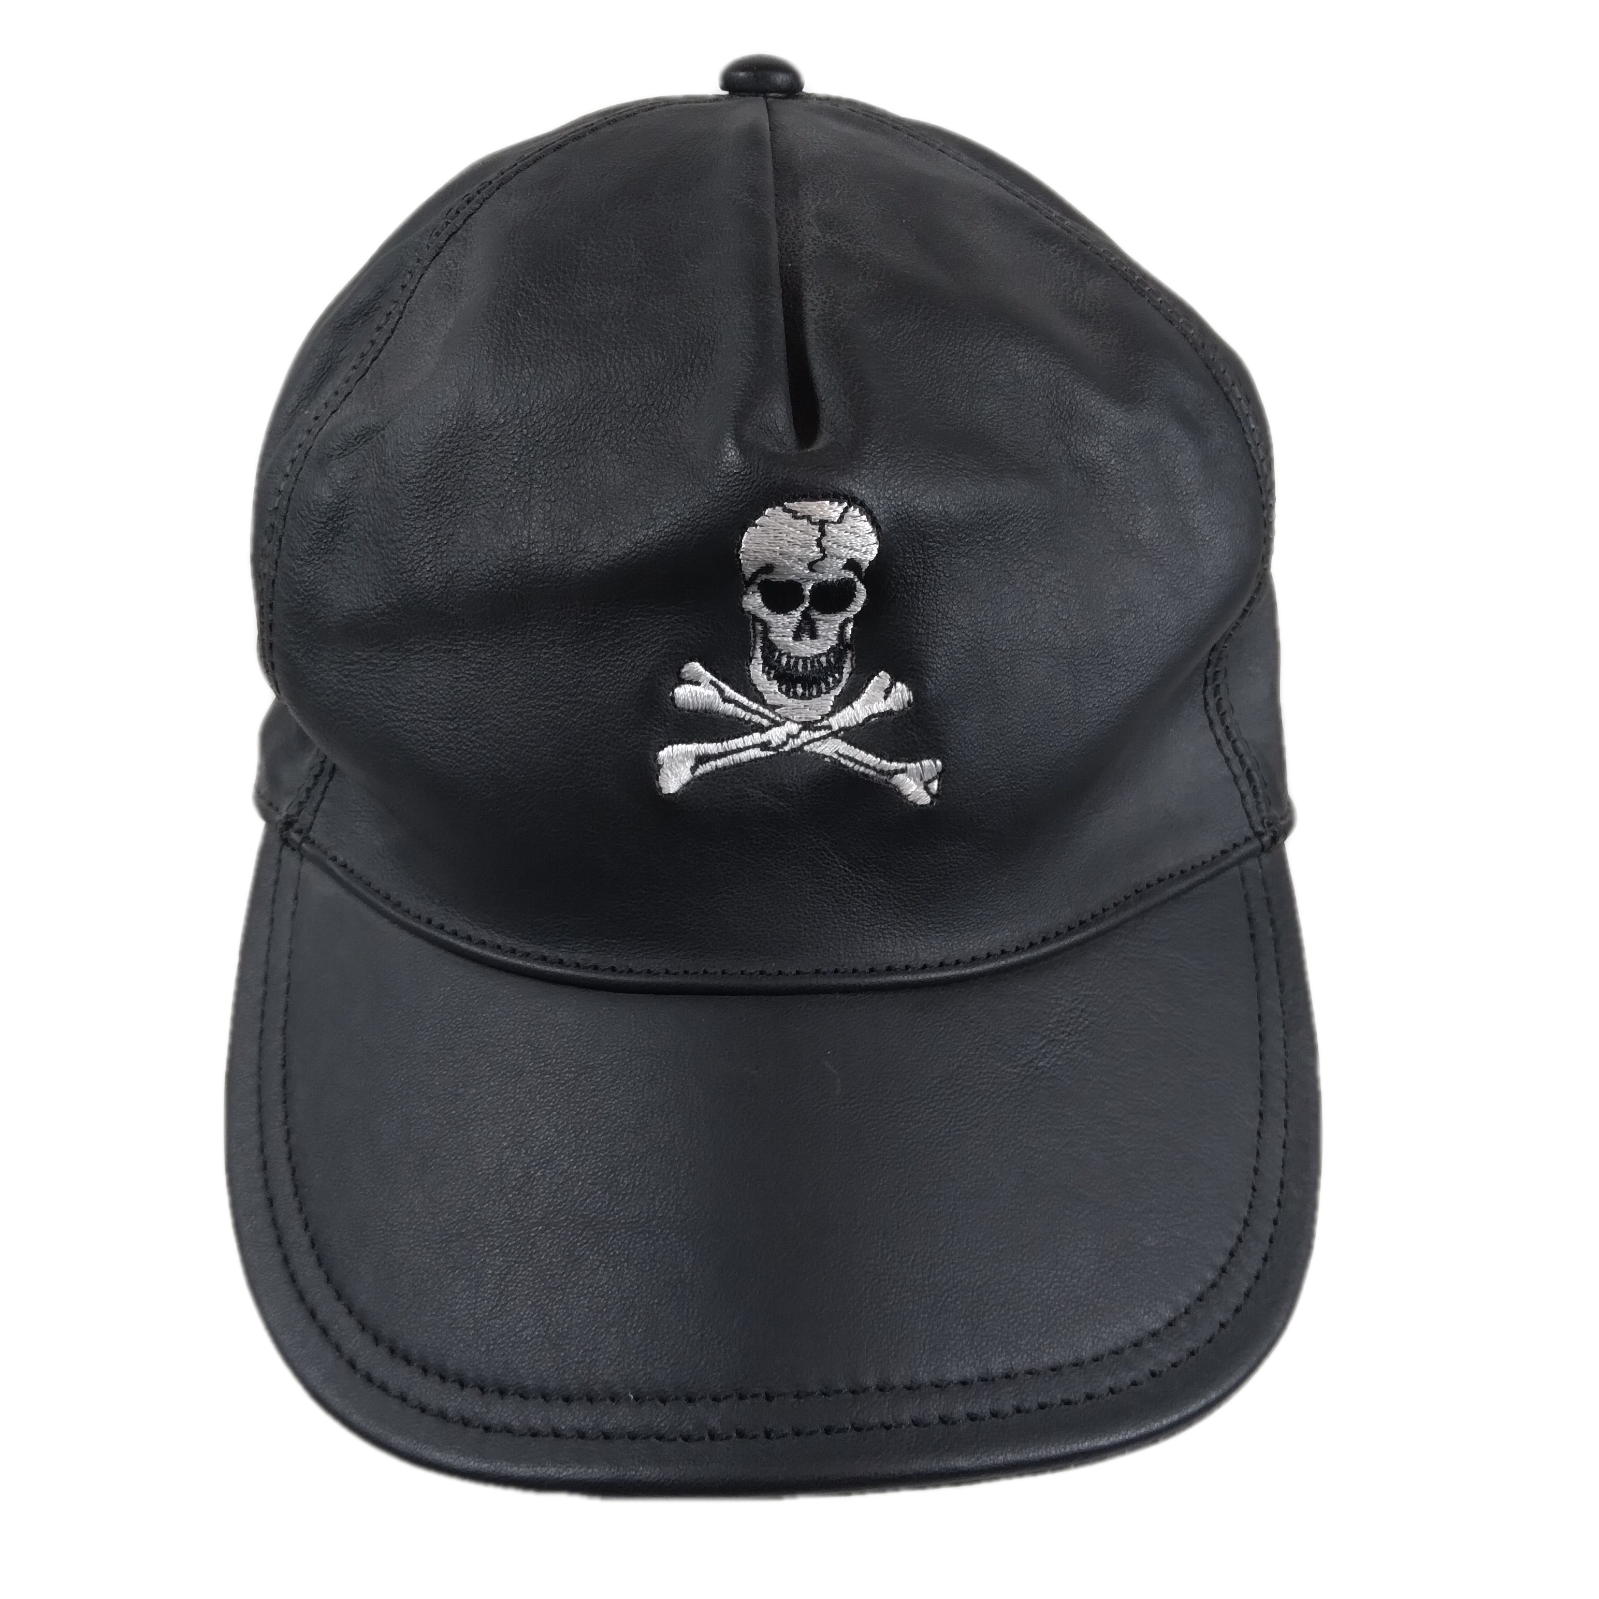 Skull & Crossbones Leather Embroidered Strapback Hat